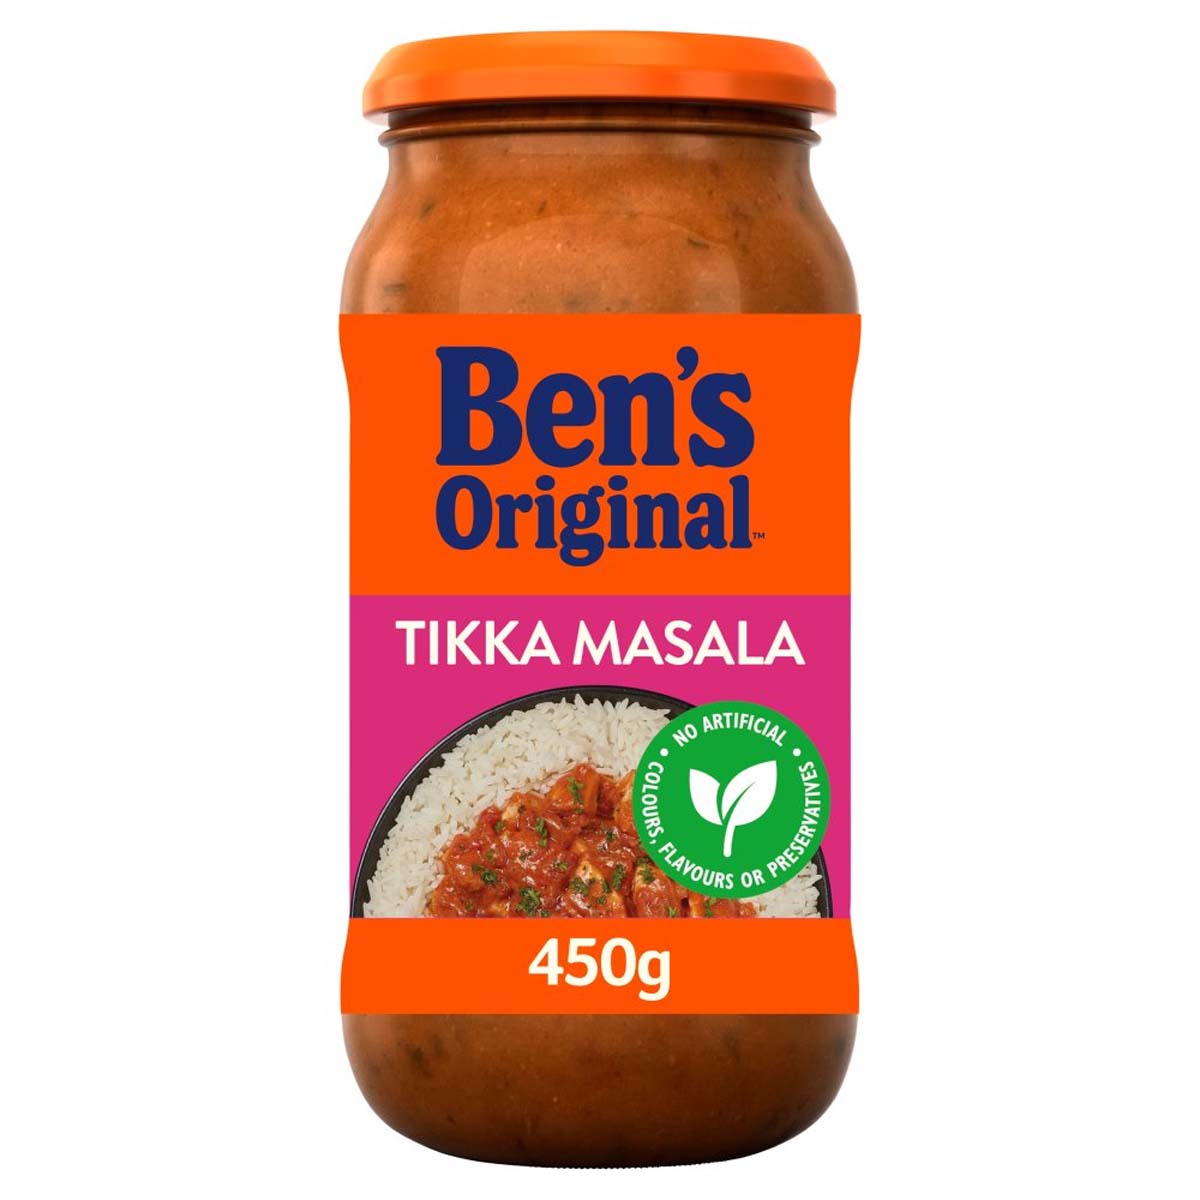 Bens Original - Tikka Masala Sauce - 450g - Continental Food Store